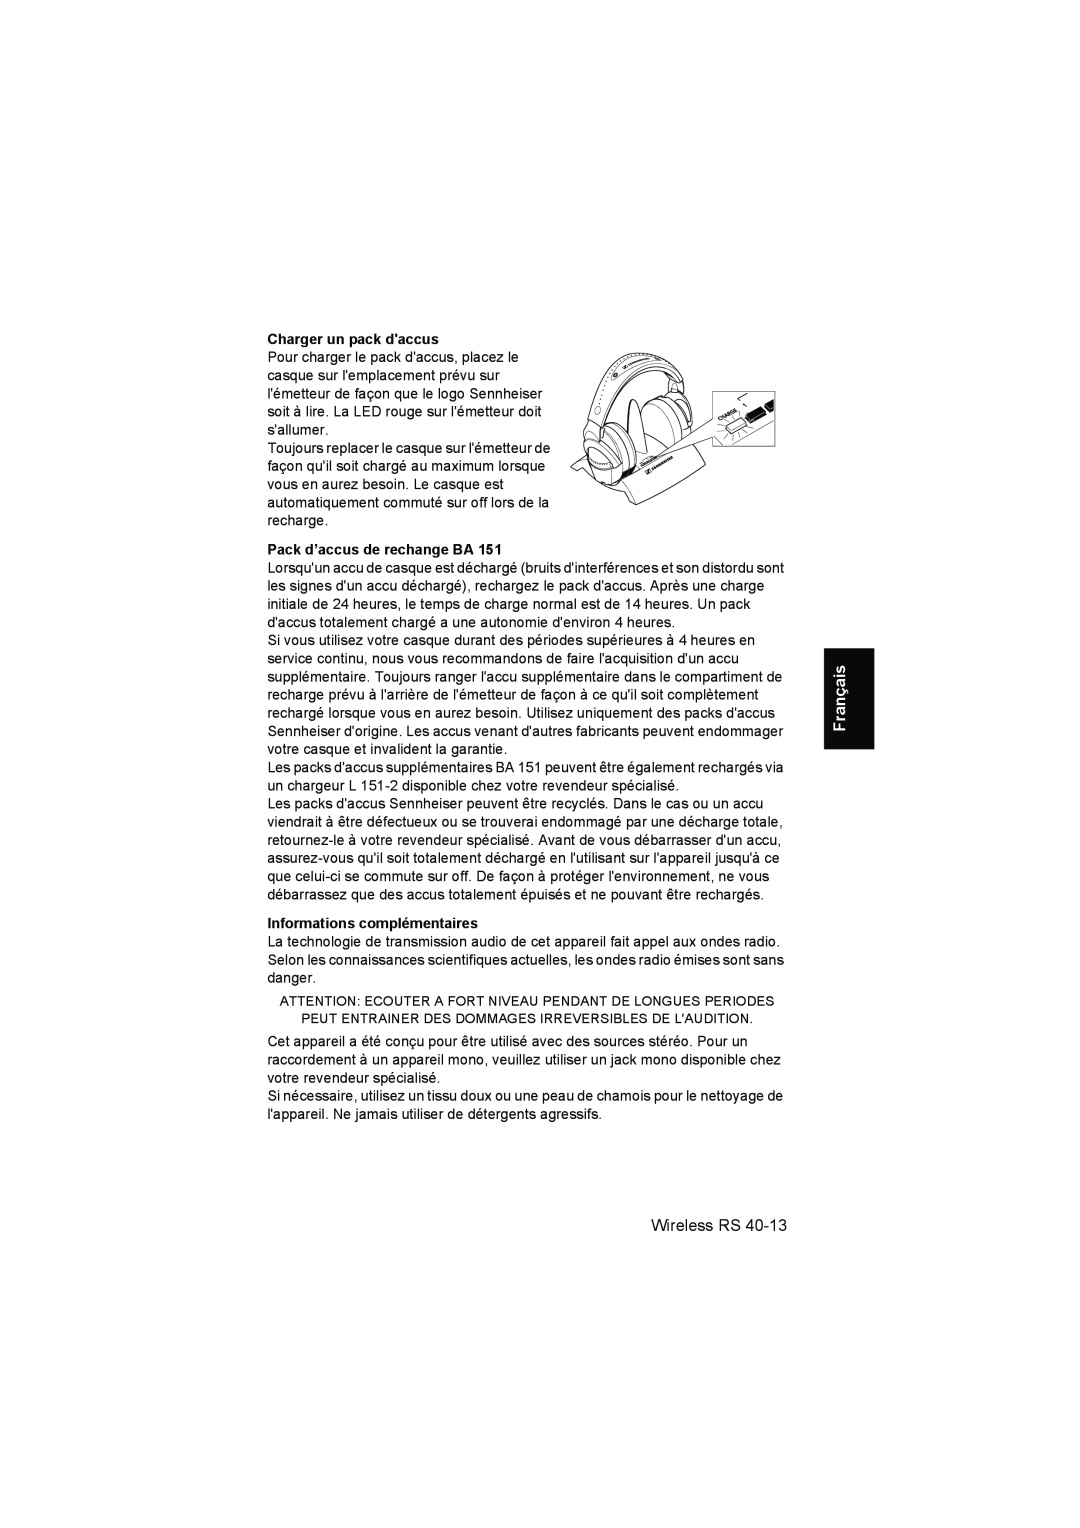 Sennheiser RS 40 Charger un pack daccus, Pack d’accus de rechange BA, Informations complémentaires, Français, Wireless RS 